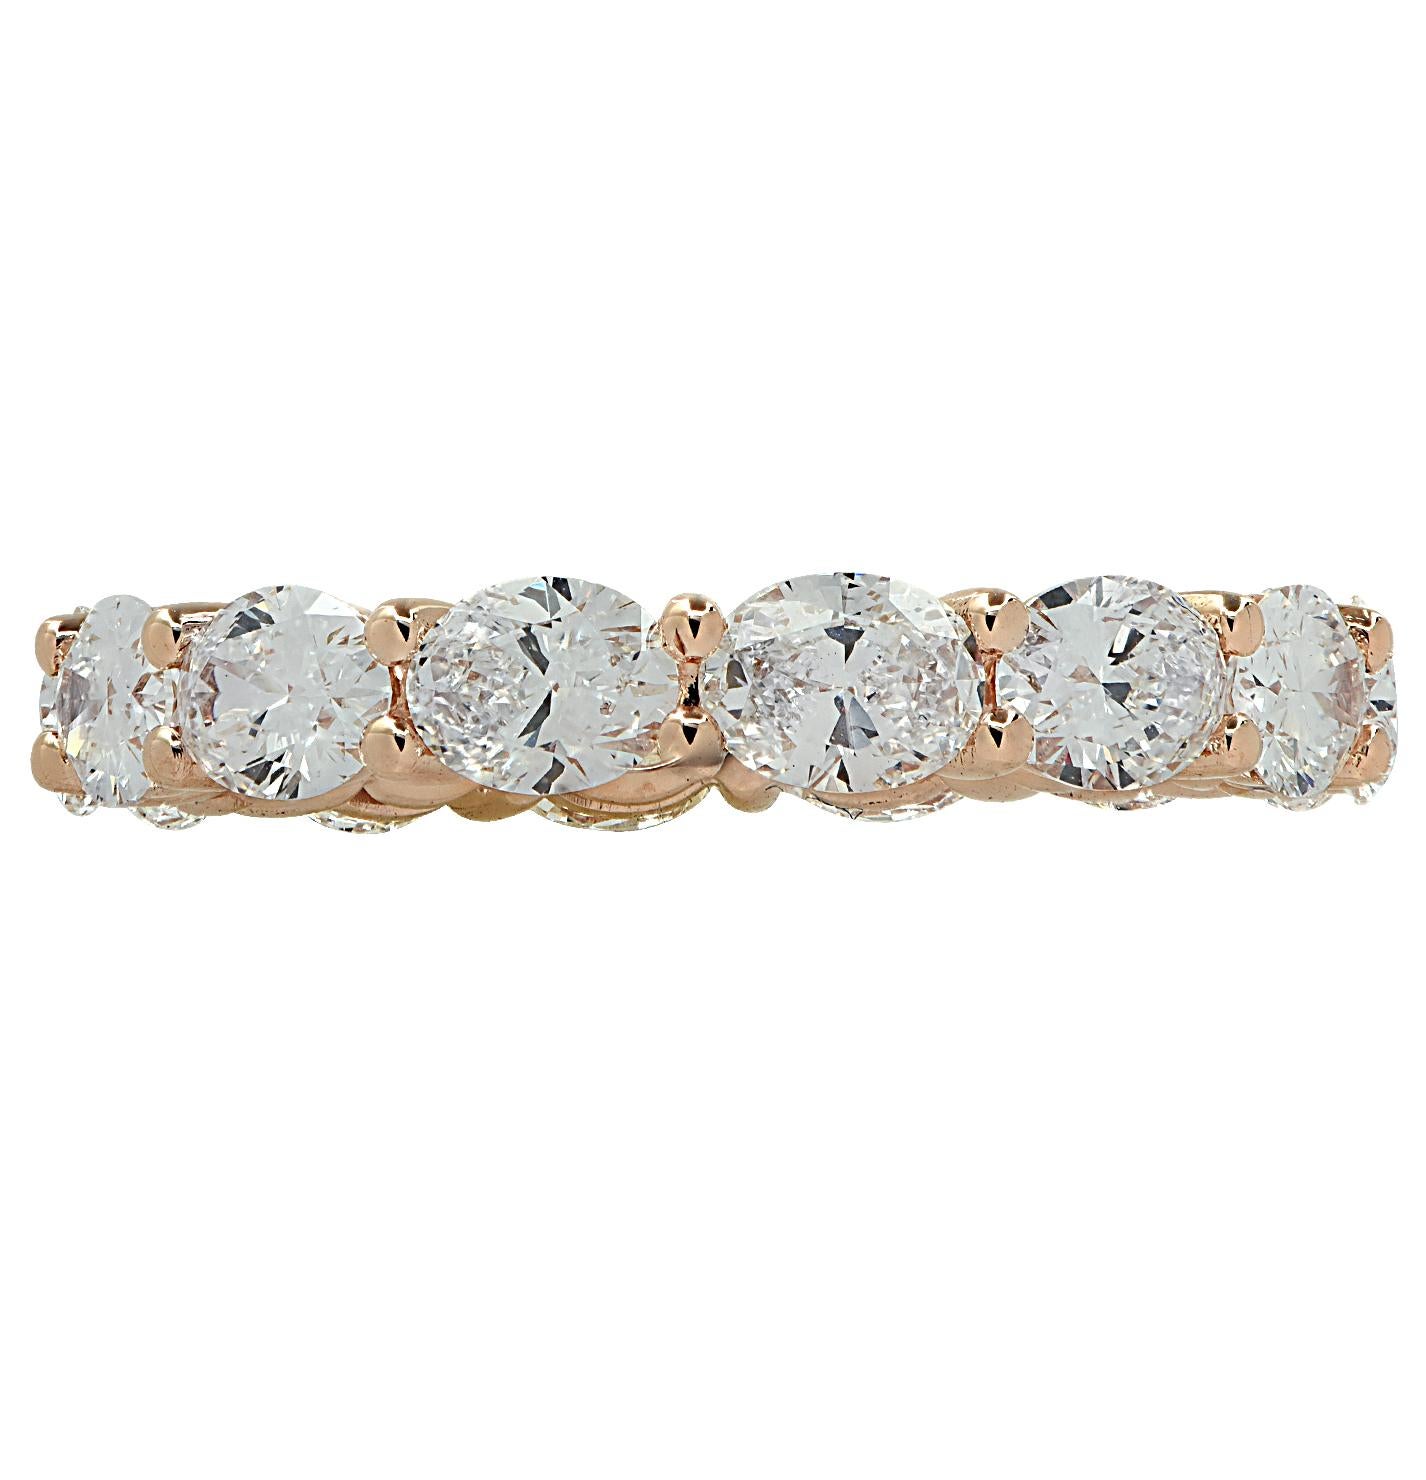 Superbe bracelet éternité Eat-West en or rose 18 carats, serti de 14 diamants taille ovale pesant 2.60 carats au total, couleur D-E, pureté VVS-VS. Ces diamants fins sont sertis sans couture, d'est en ouest, dans une version moderne de l'anneau